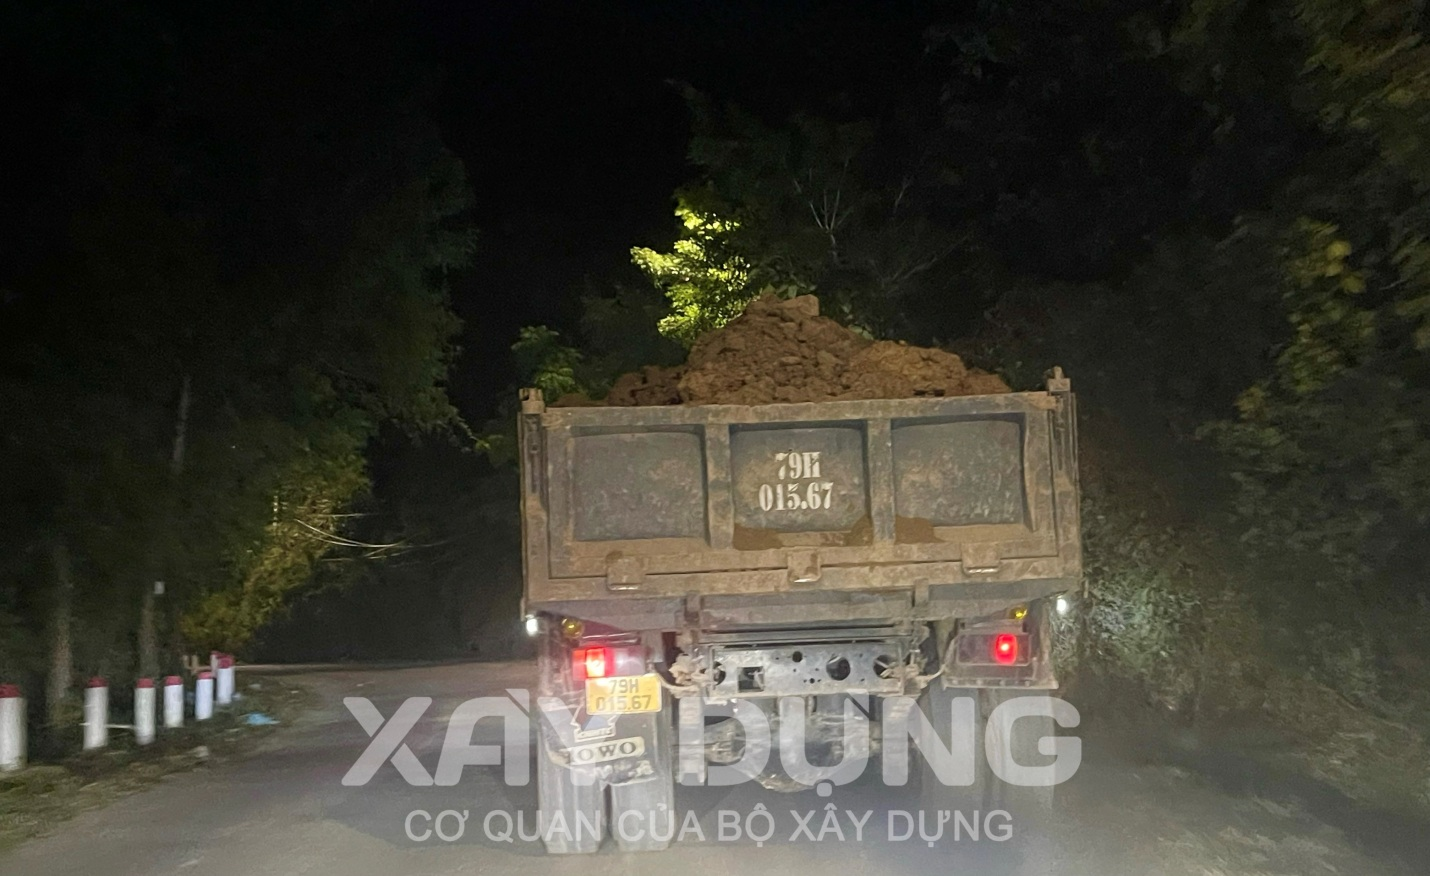 Khánh Hòa: Chậm xử lý sai phạm thu gom, dự trữ đất “lậu” của nhà máy gạch Tuynel Diên Khánh